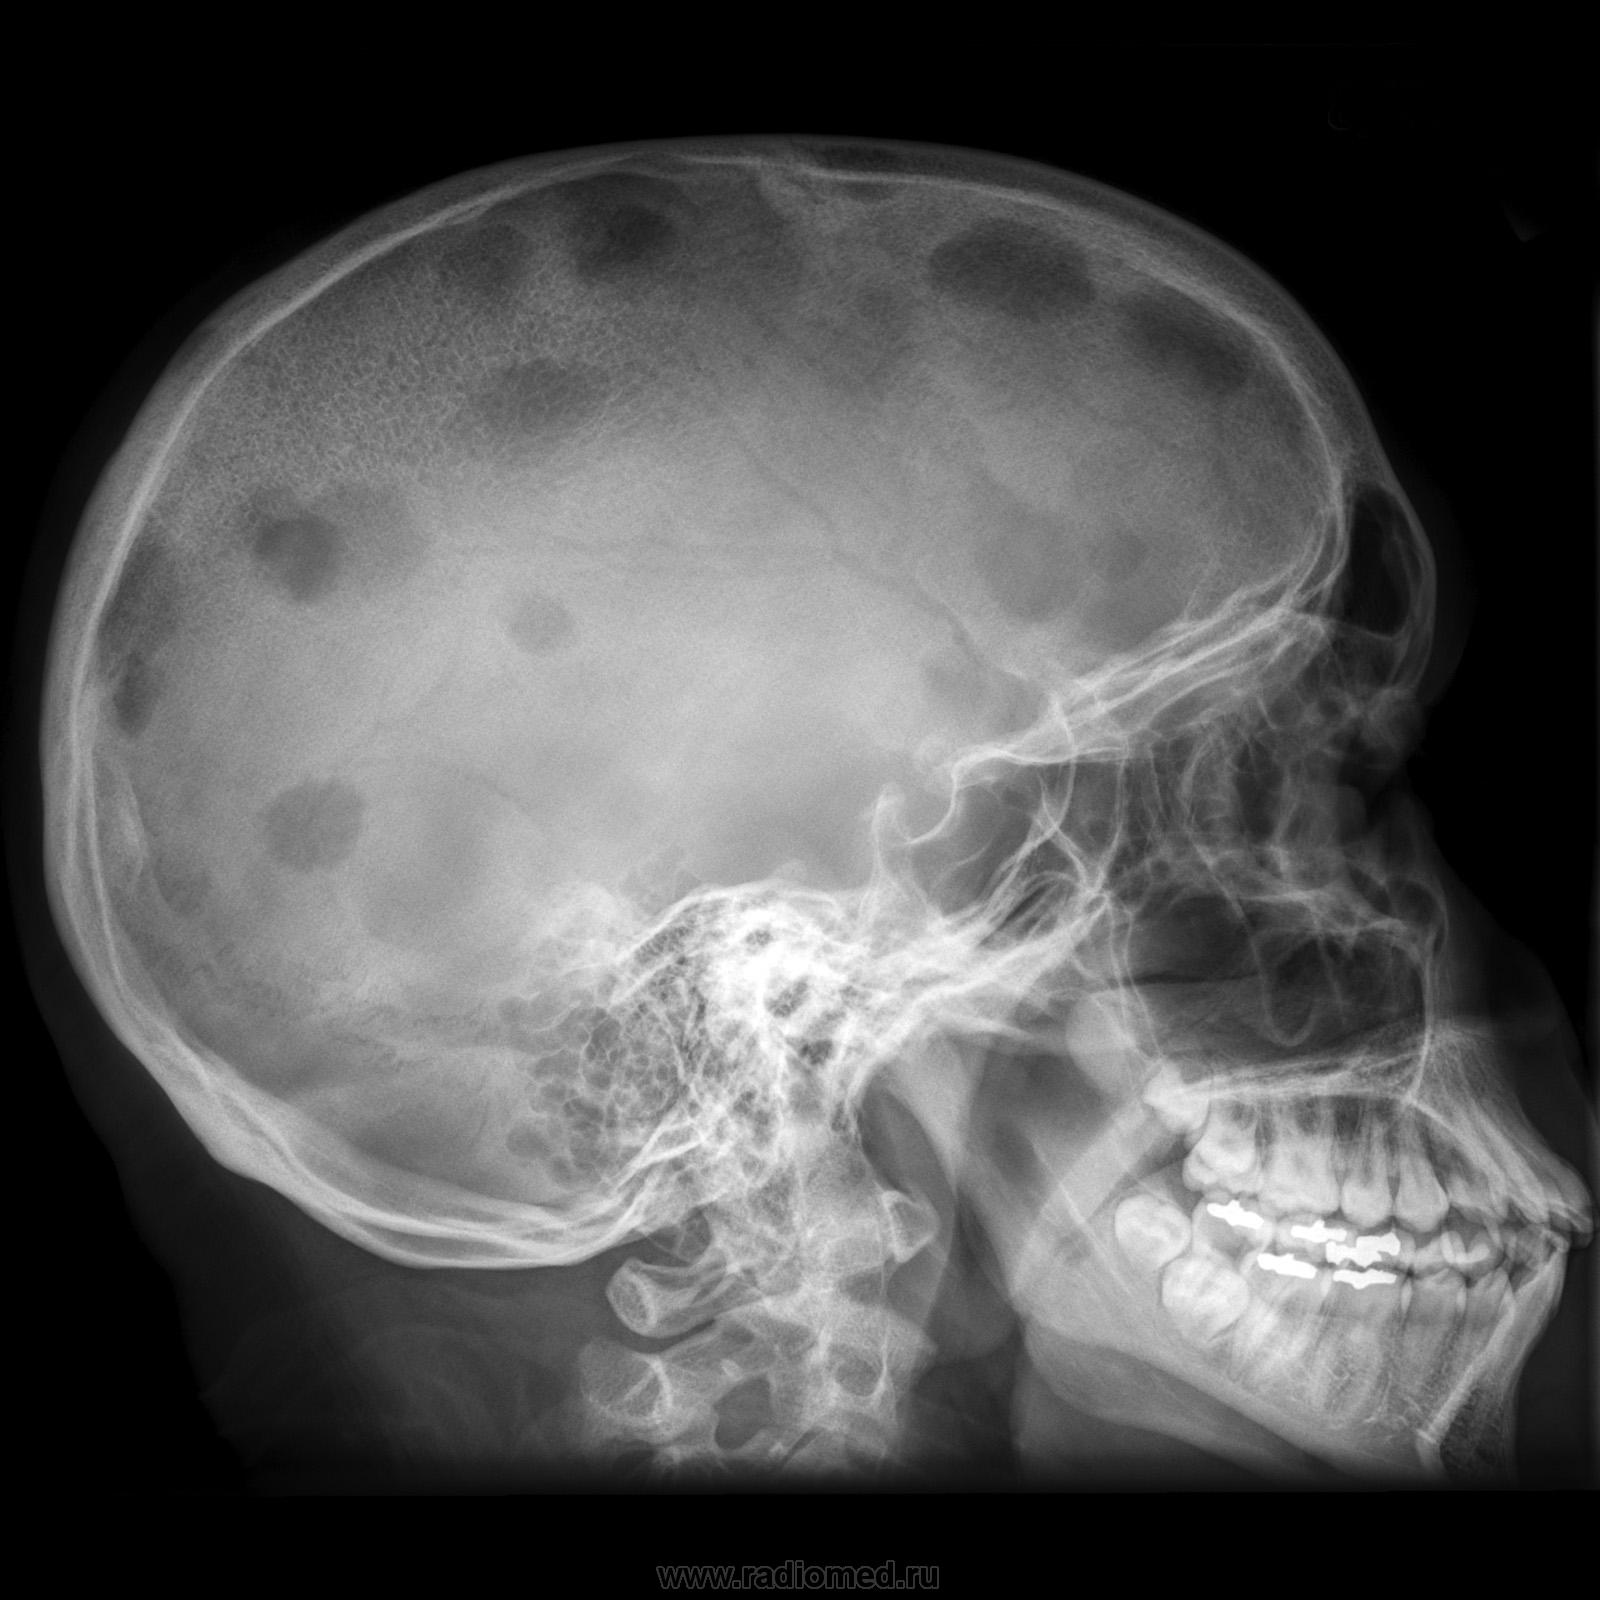 Скрытая патология. Остеома костей черепа кт. Миеломная болезнь рентген черепа. Эозинофильная гранулема костей черепа. Фиброзная дисплазия черепа рентген.